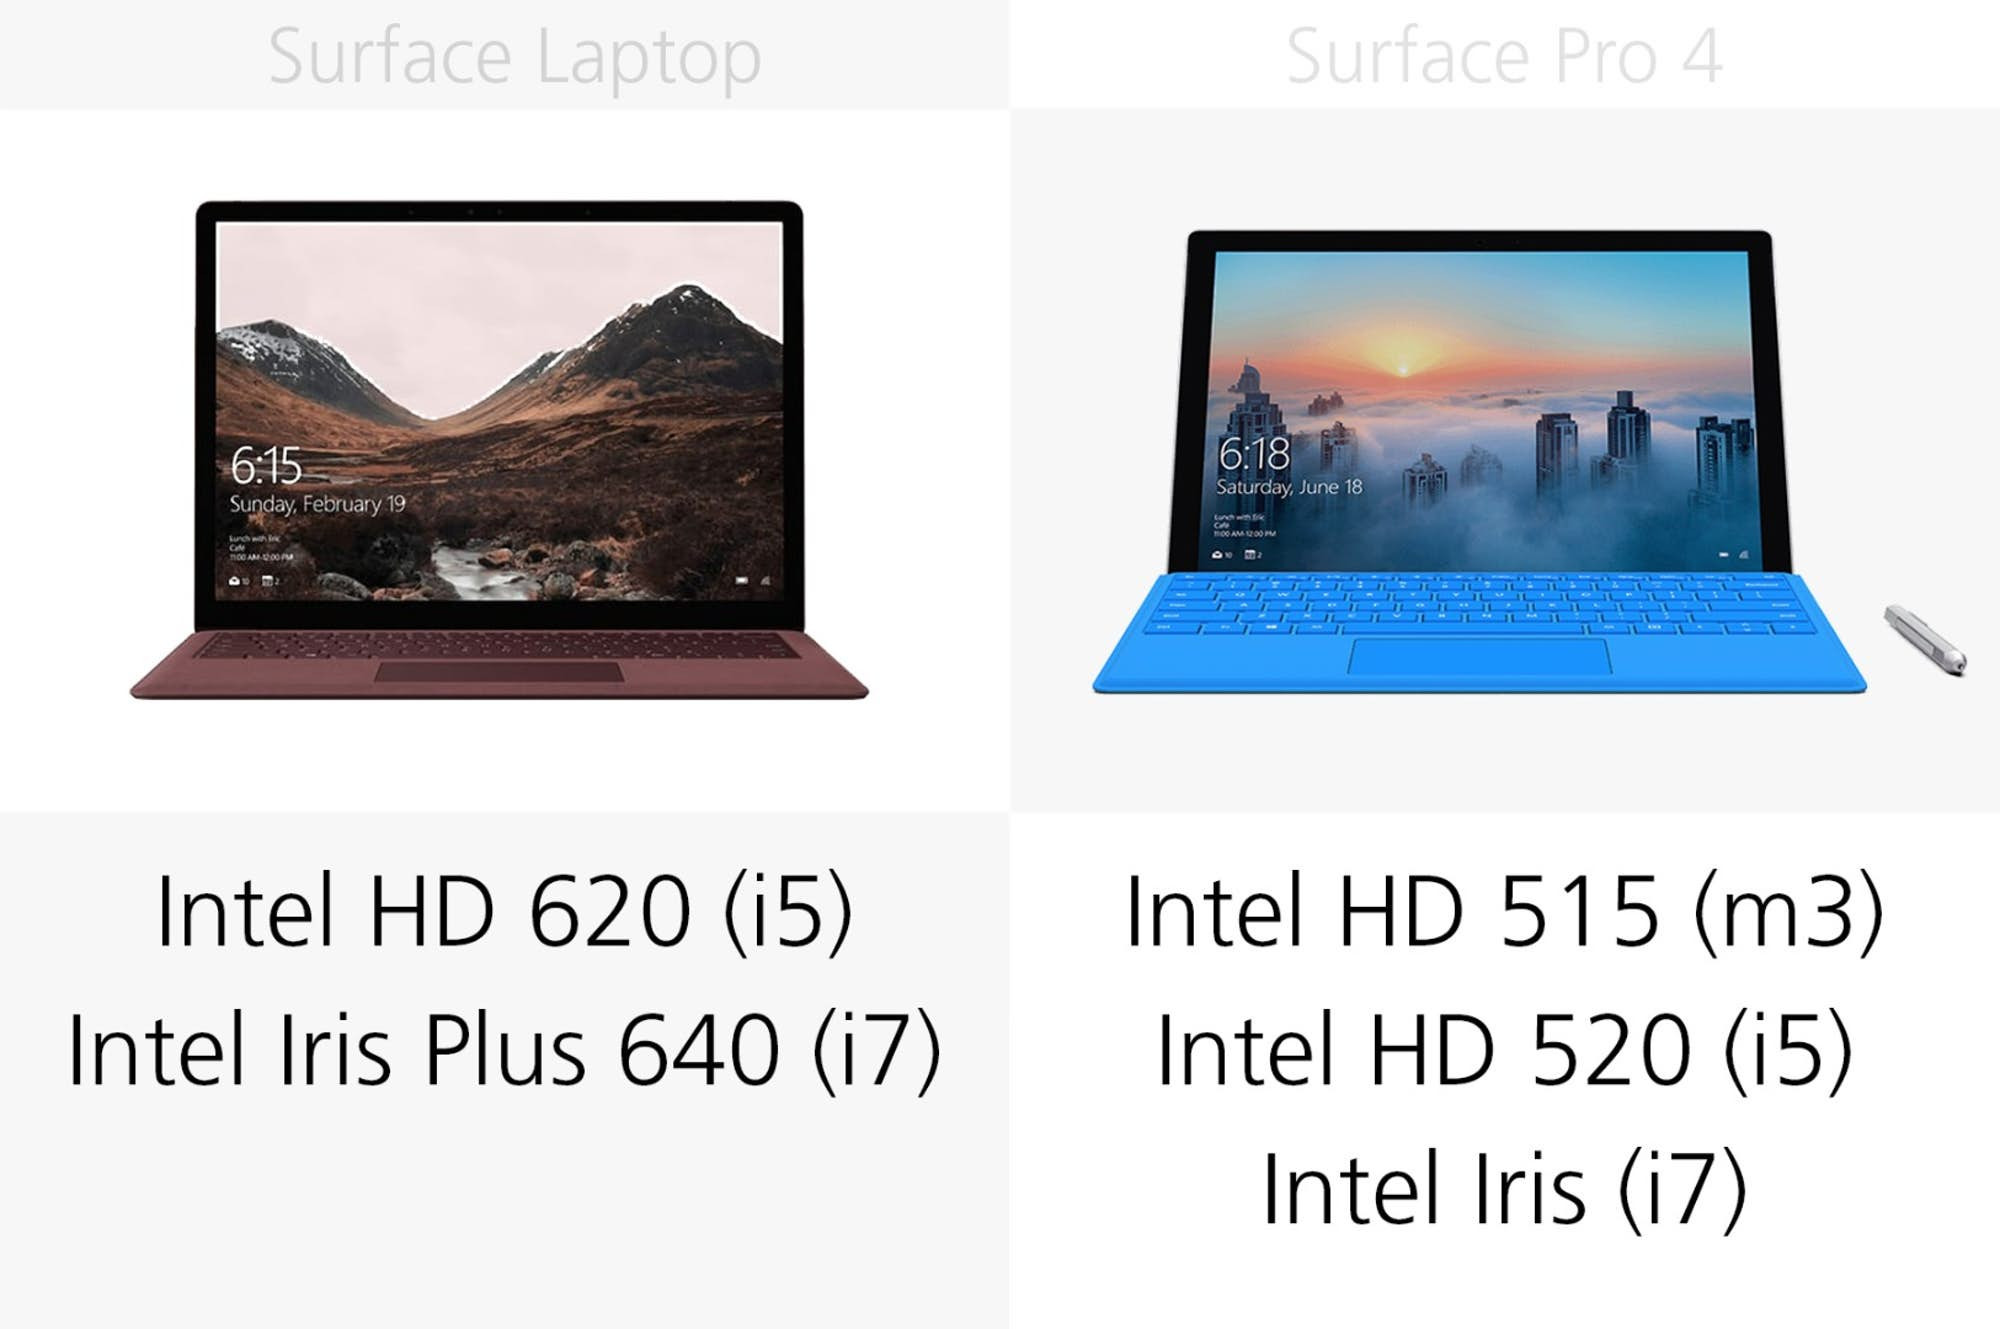 1493969733_microsoft-surface-laptop-vs-surface-pro-4-specs-comparison-12.jpg